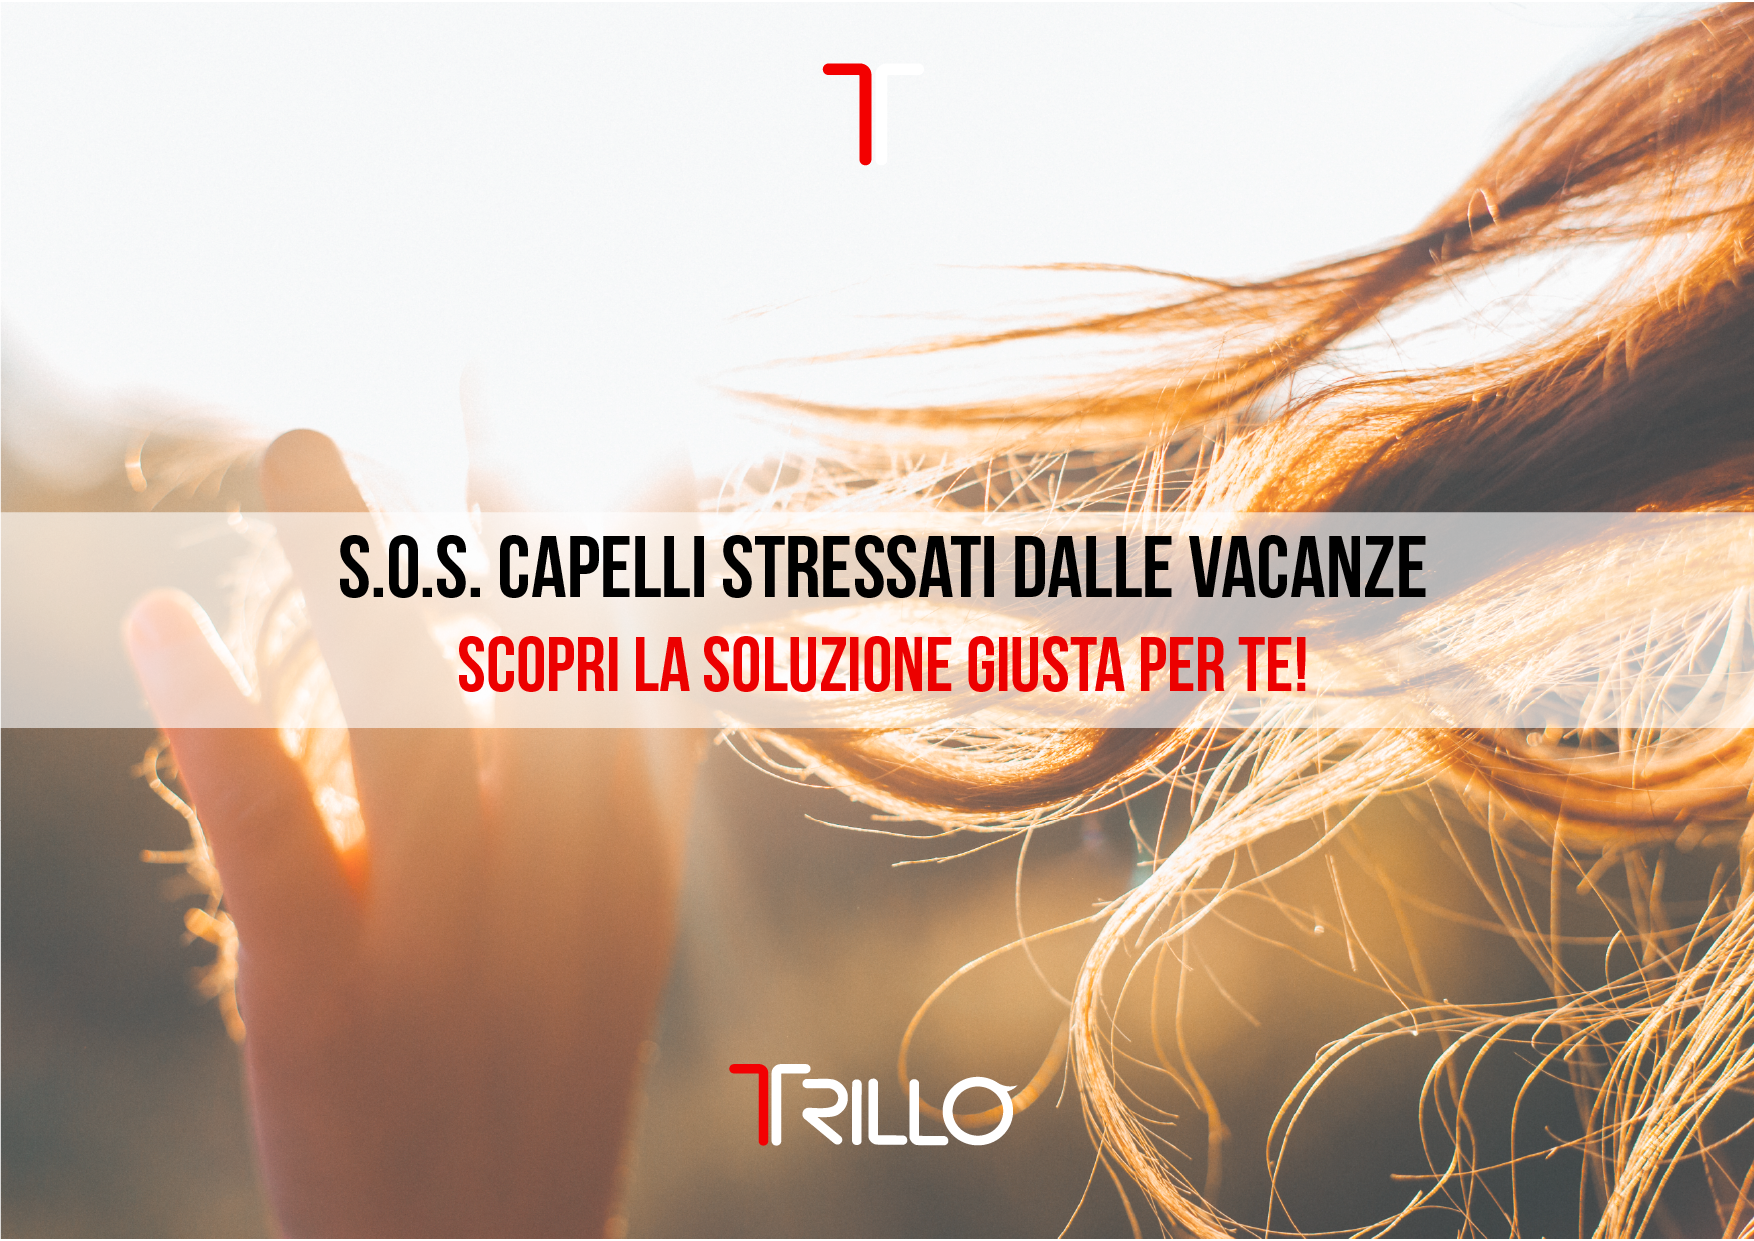 S.o.s. Capelli stressati dalle vacanze